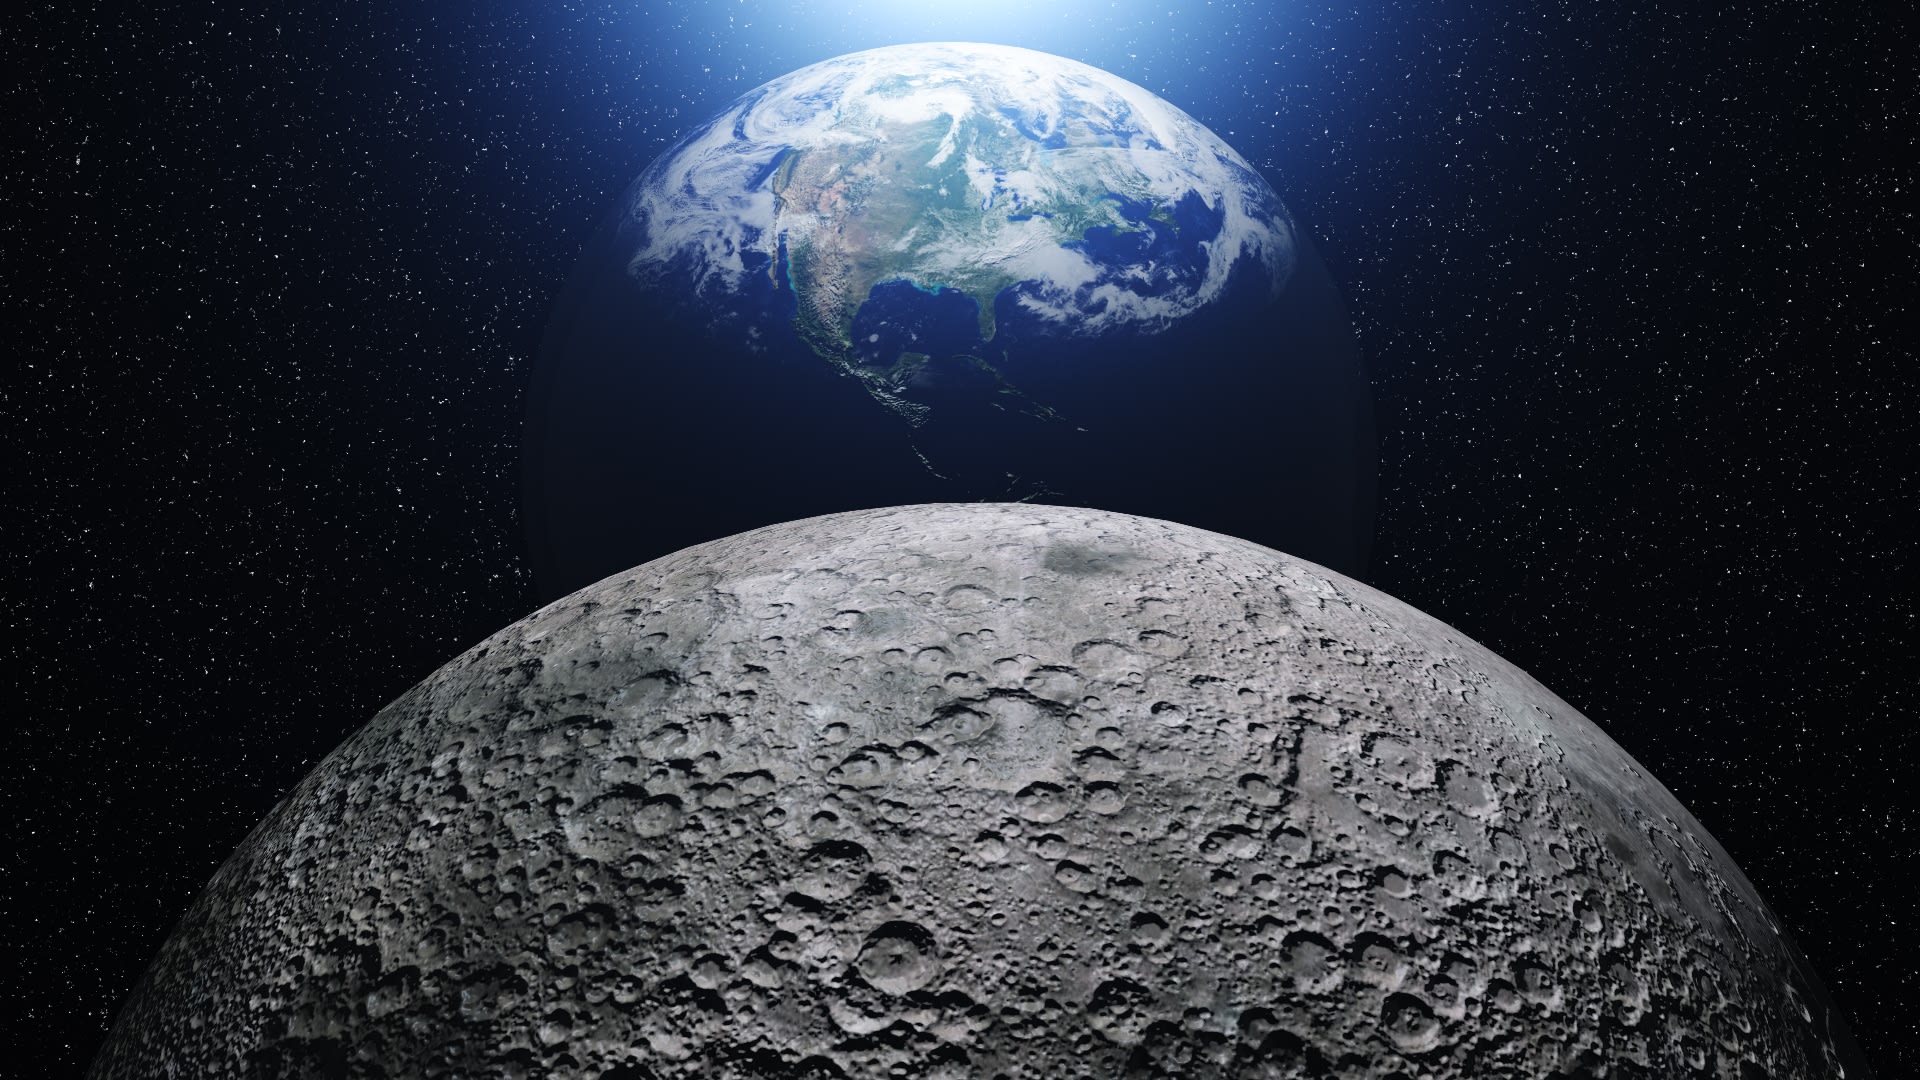 Ilustrační fotka Země a Měsíce